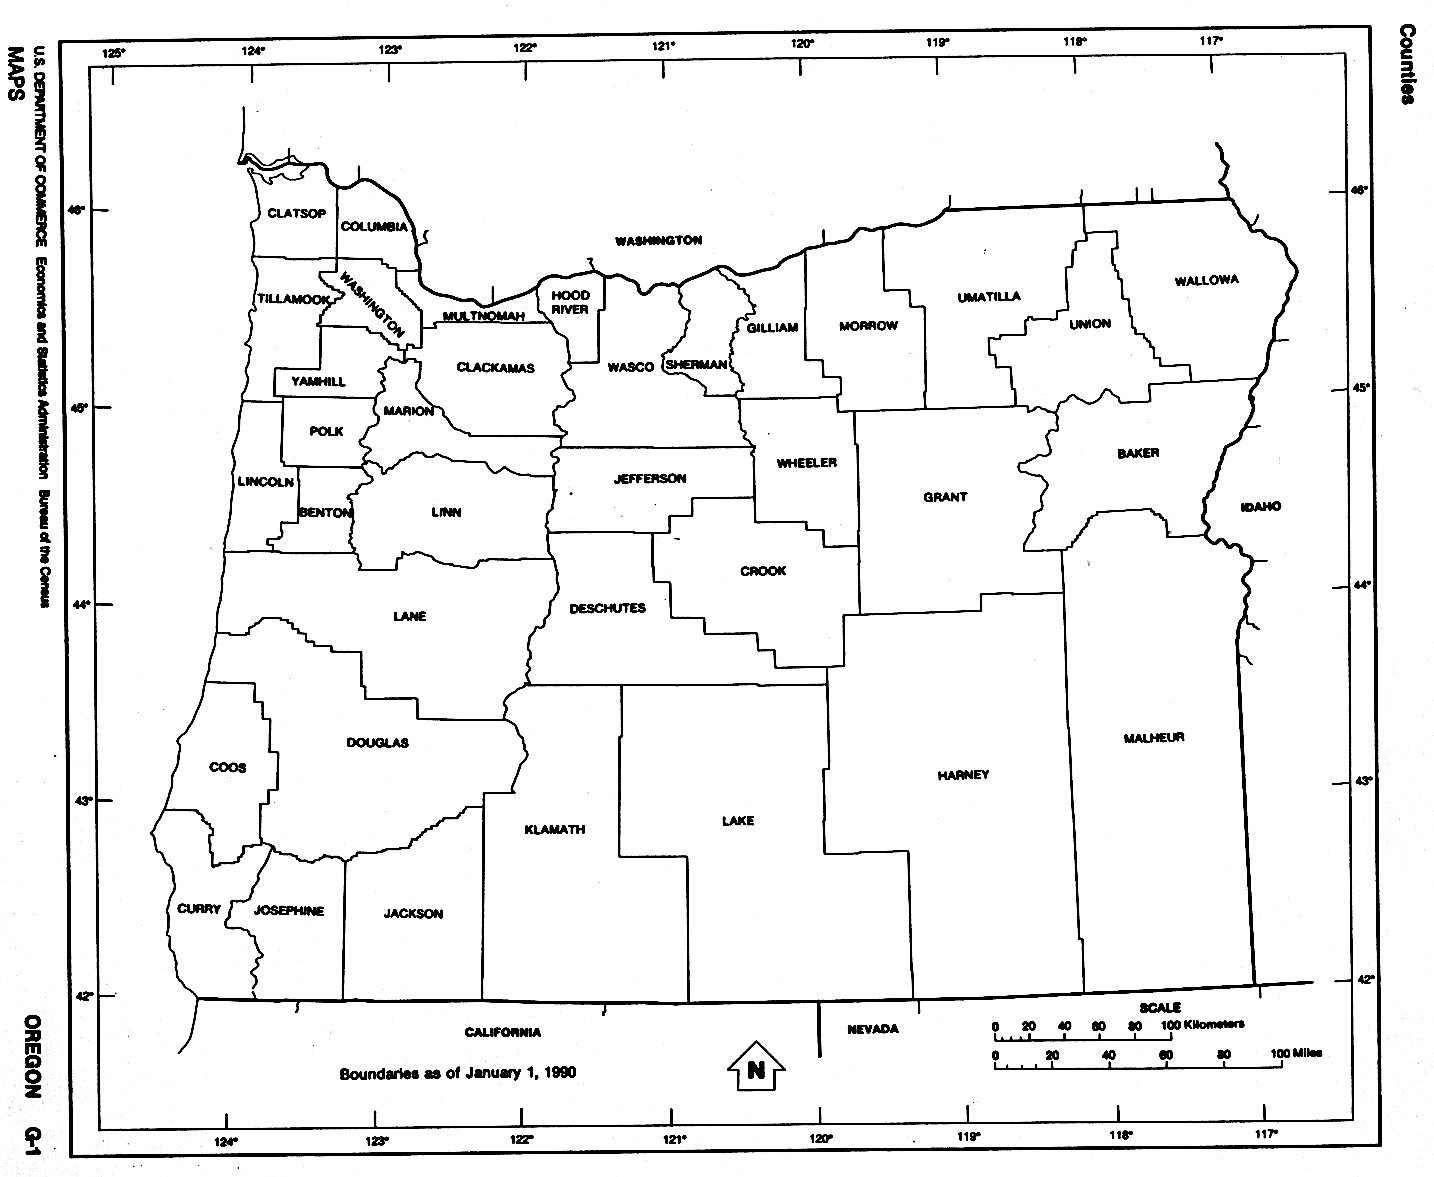 Mapa Blanco y Negro de Oregón, Estados Unidos